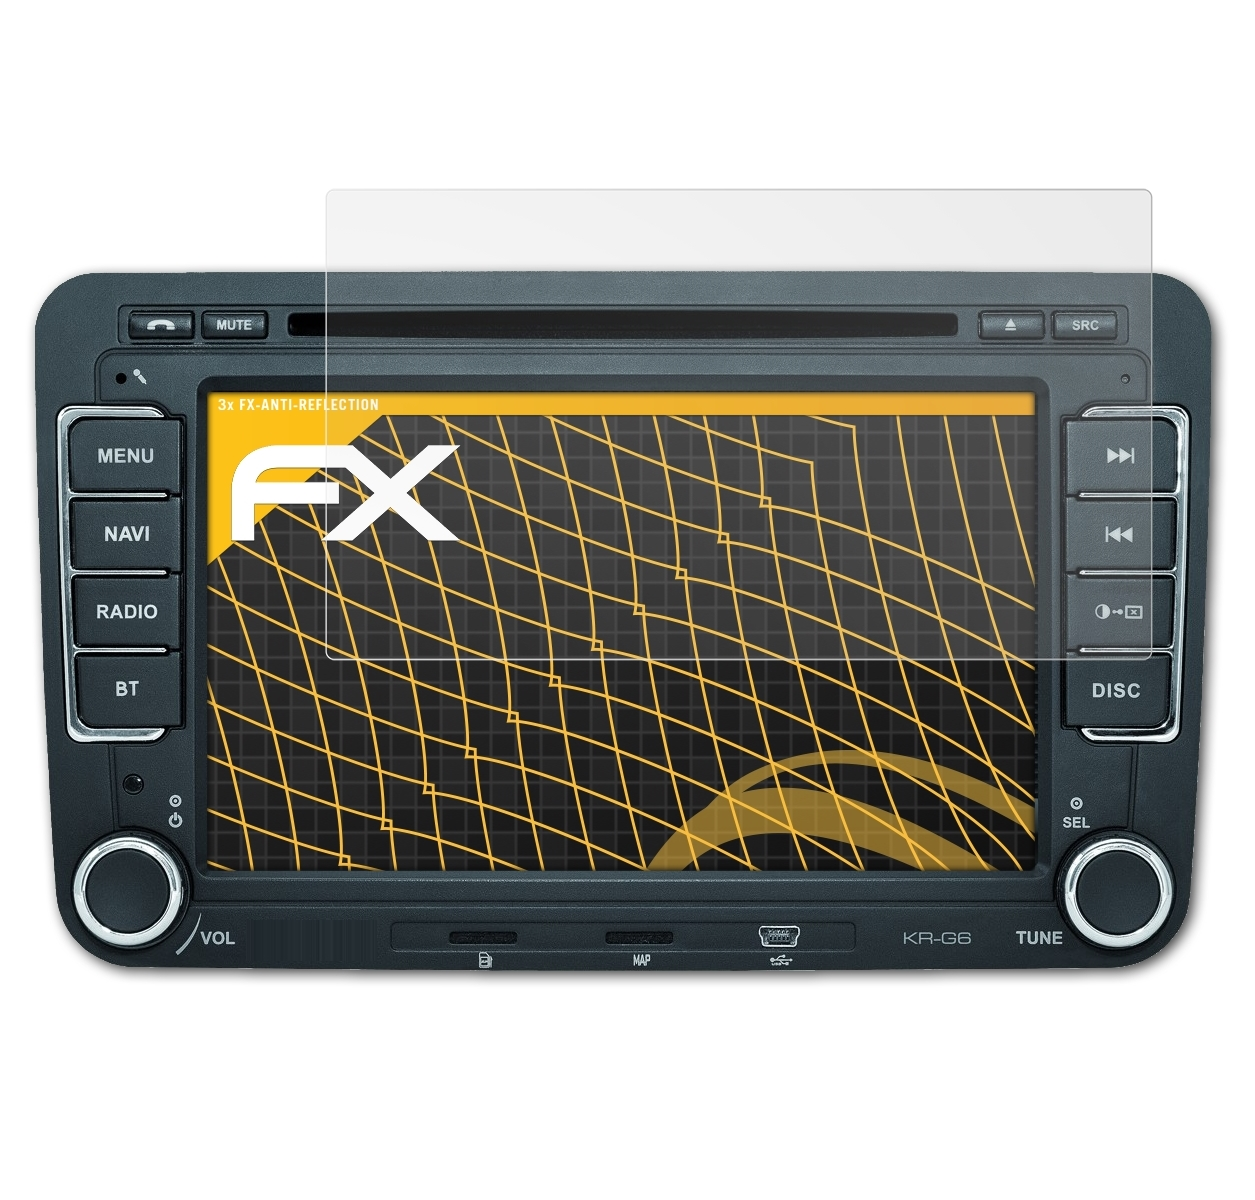 KR-G6) 3x FX-Antireflex Kraemer-Automotive Displayschutz(für ATFOLIX